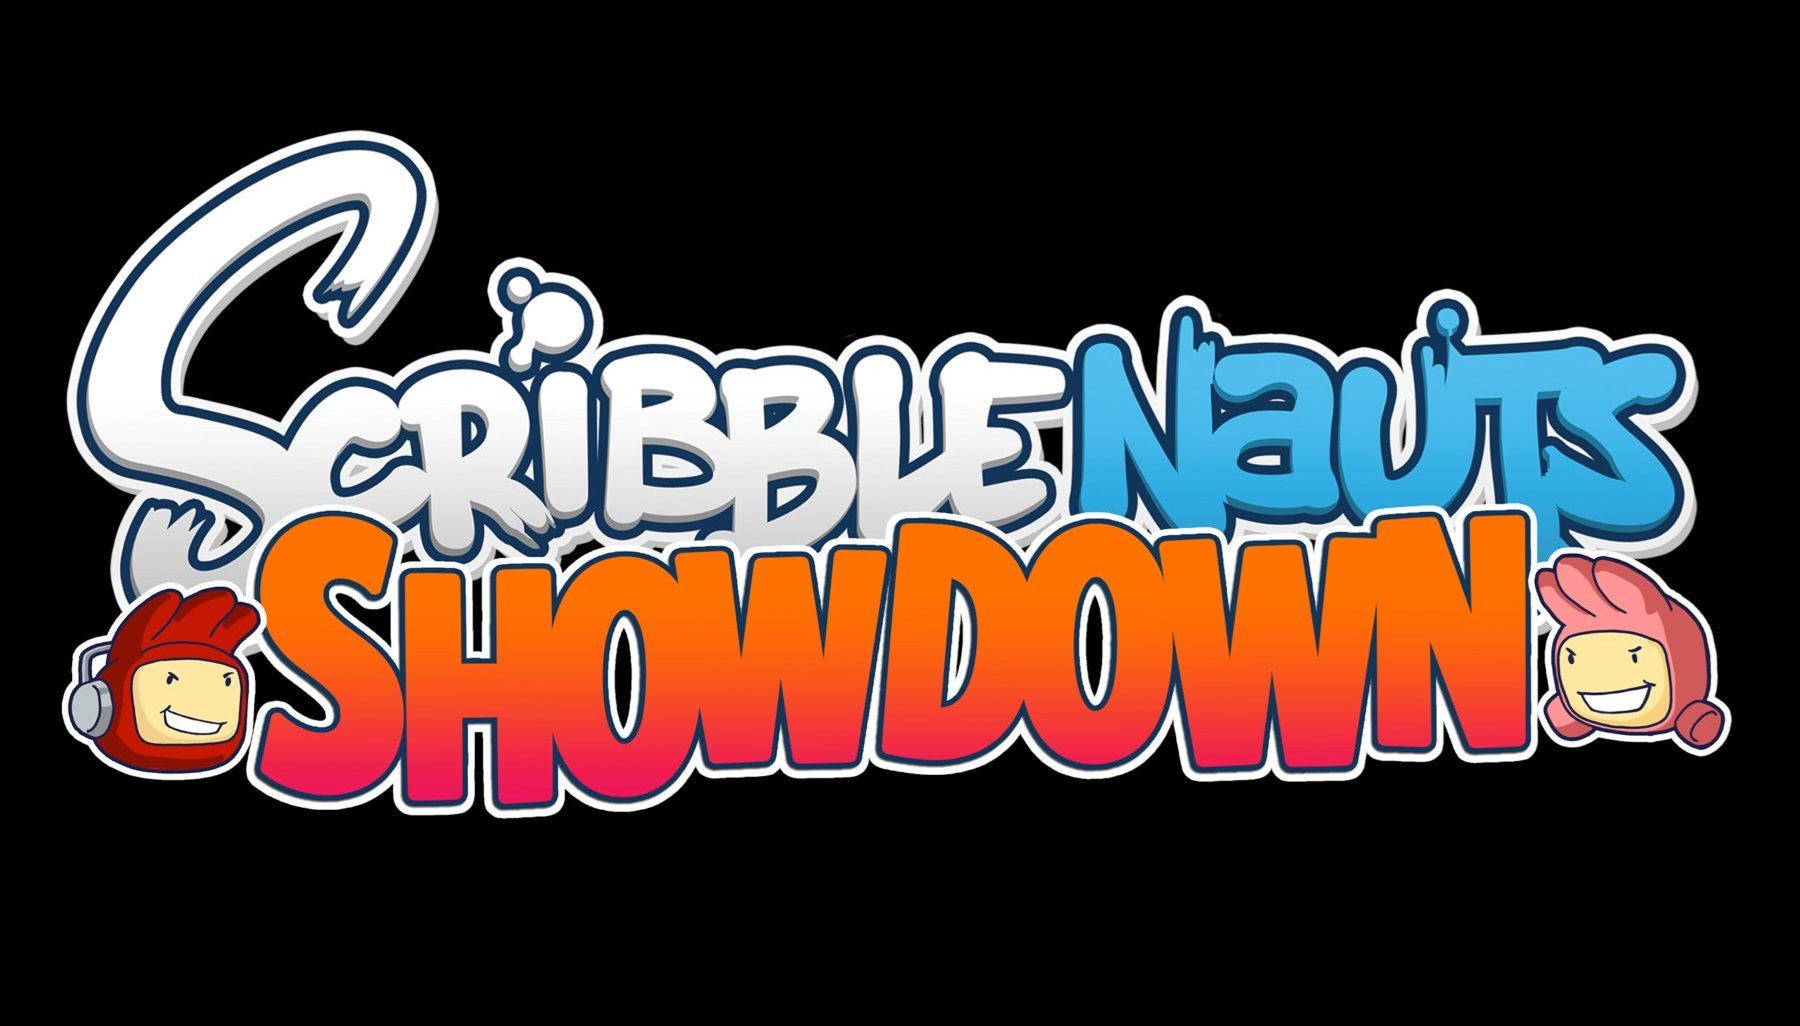 Scribblenauts Showdown llegará a las consolas este marzo